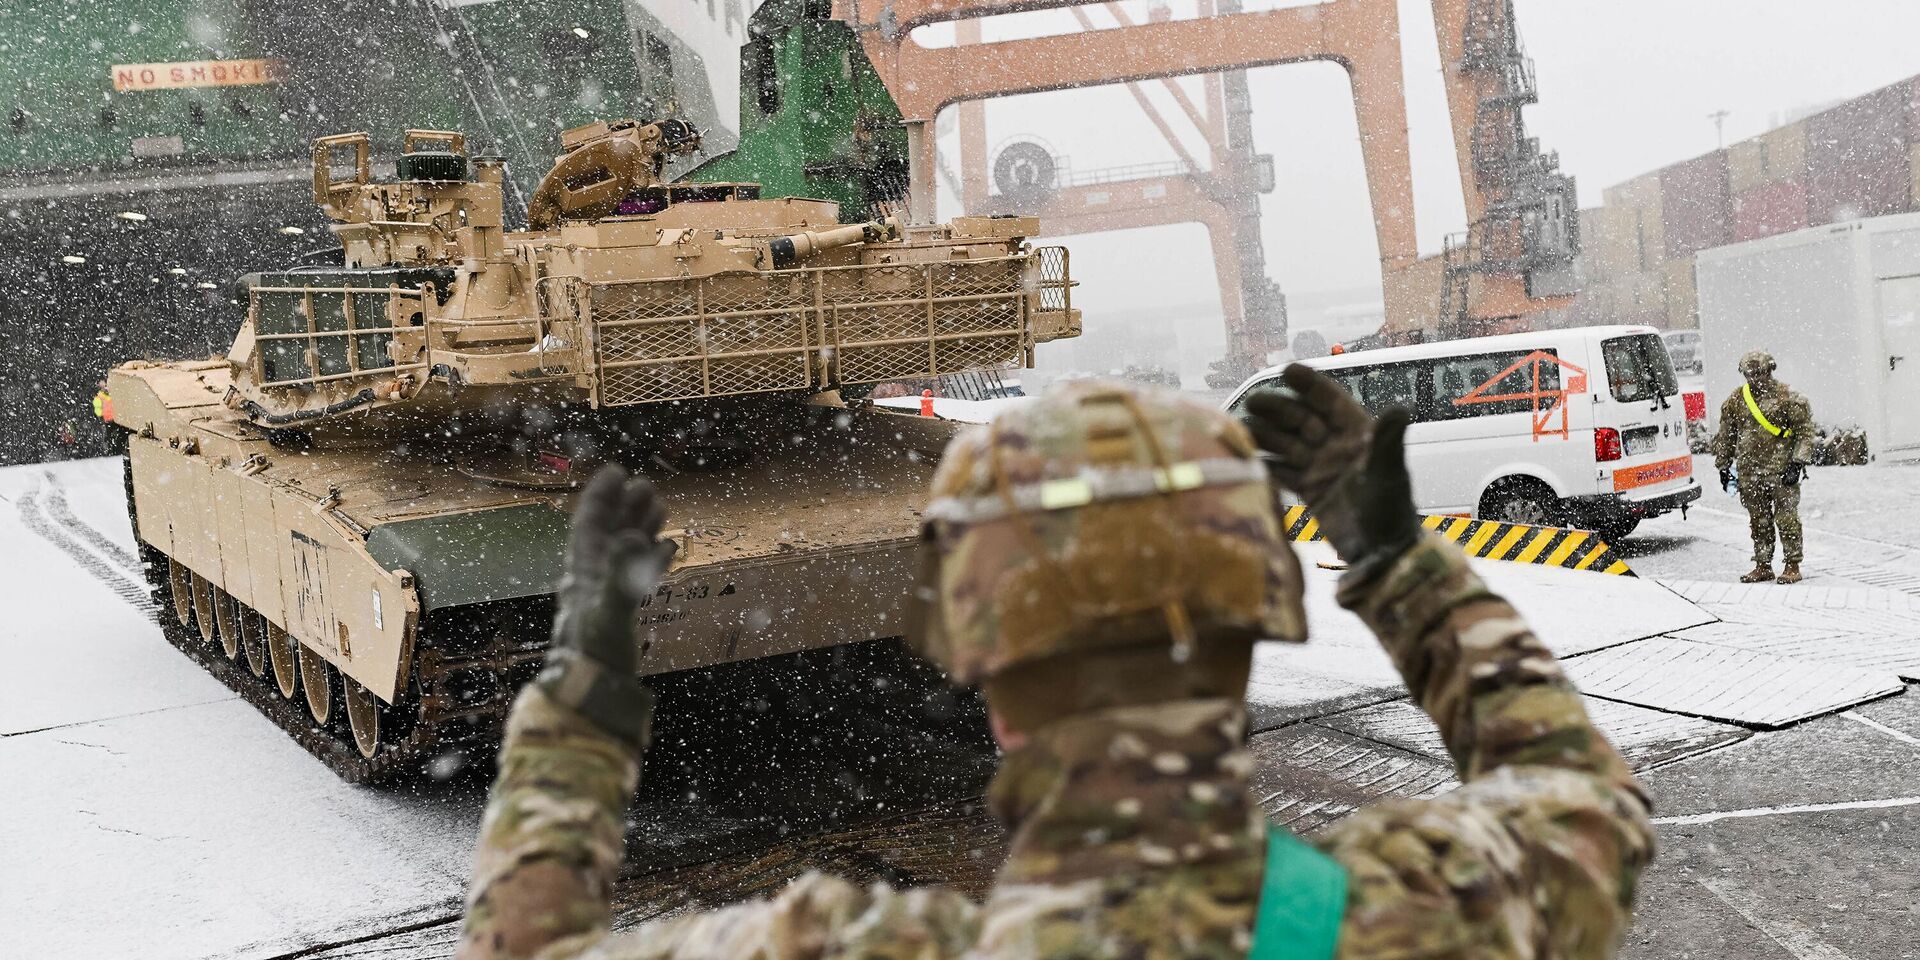 Разгрузка танка M1A2 Abrams в Гдыне, Польша. 3 декабря 2022 года - ИноСМИ, 1920, 19.12.2022